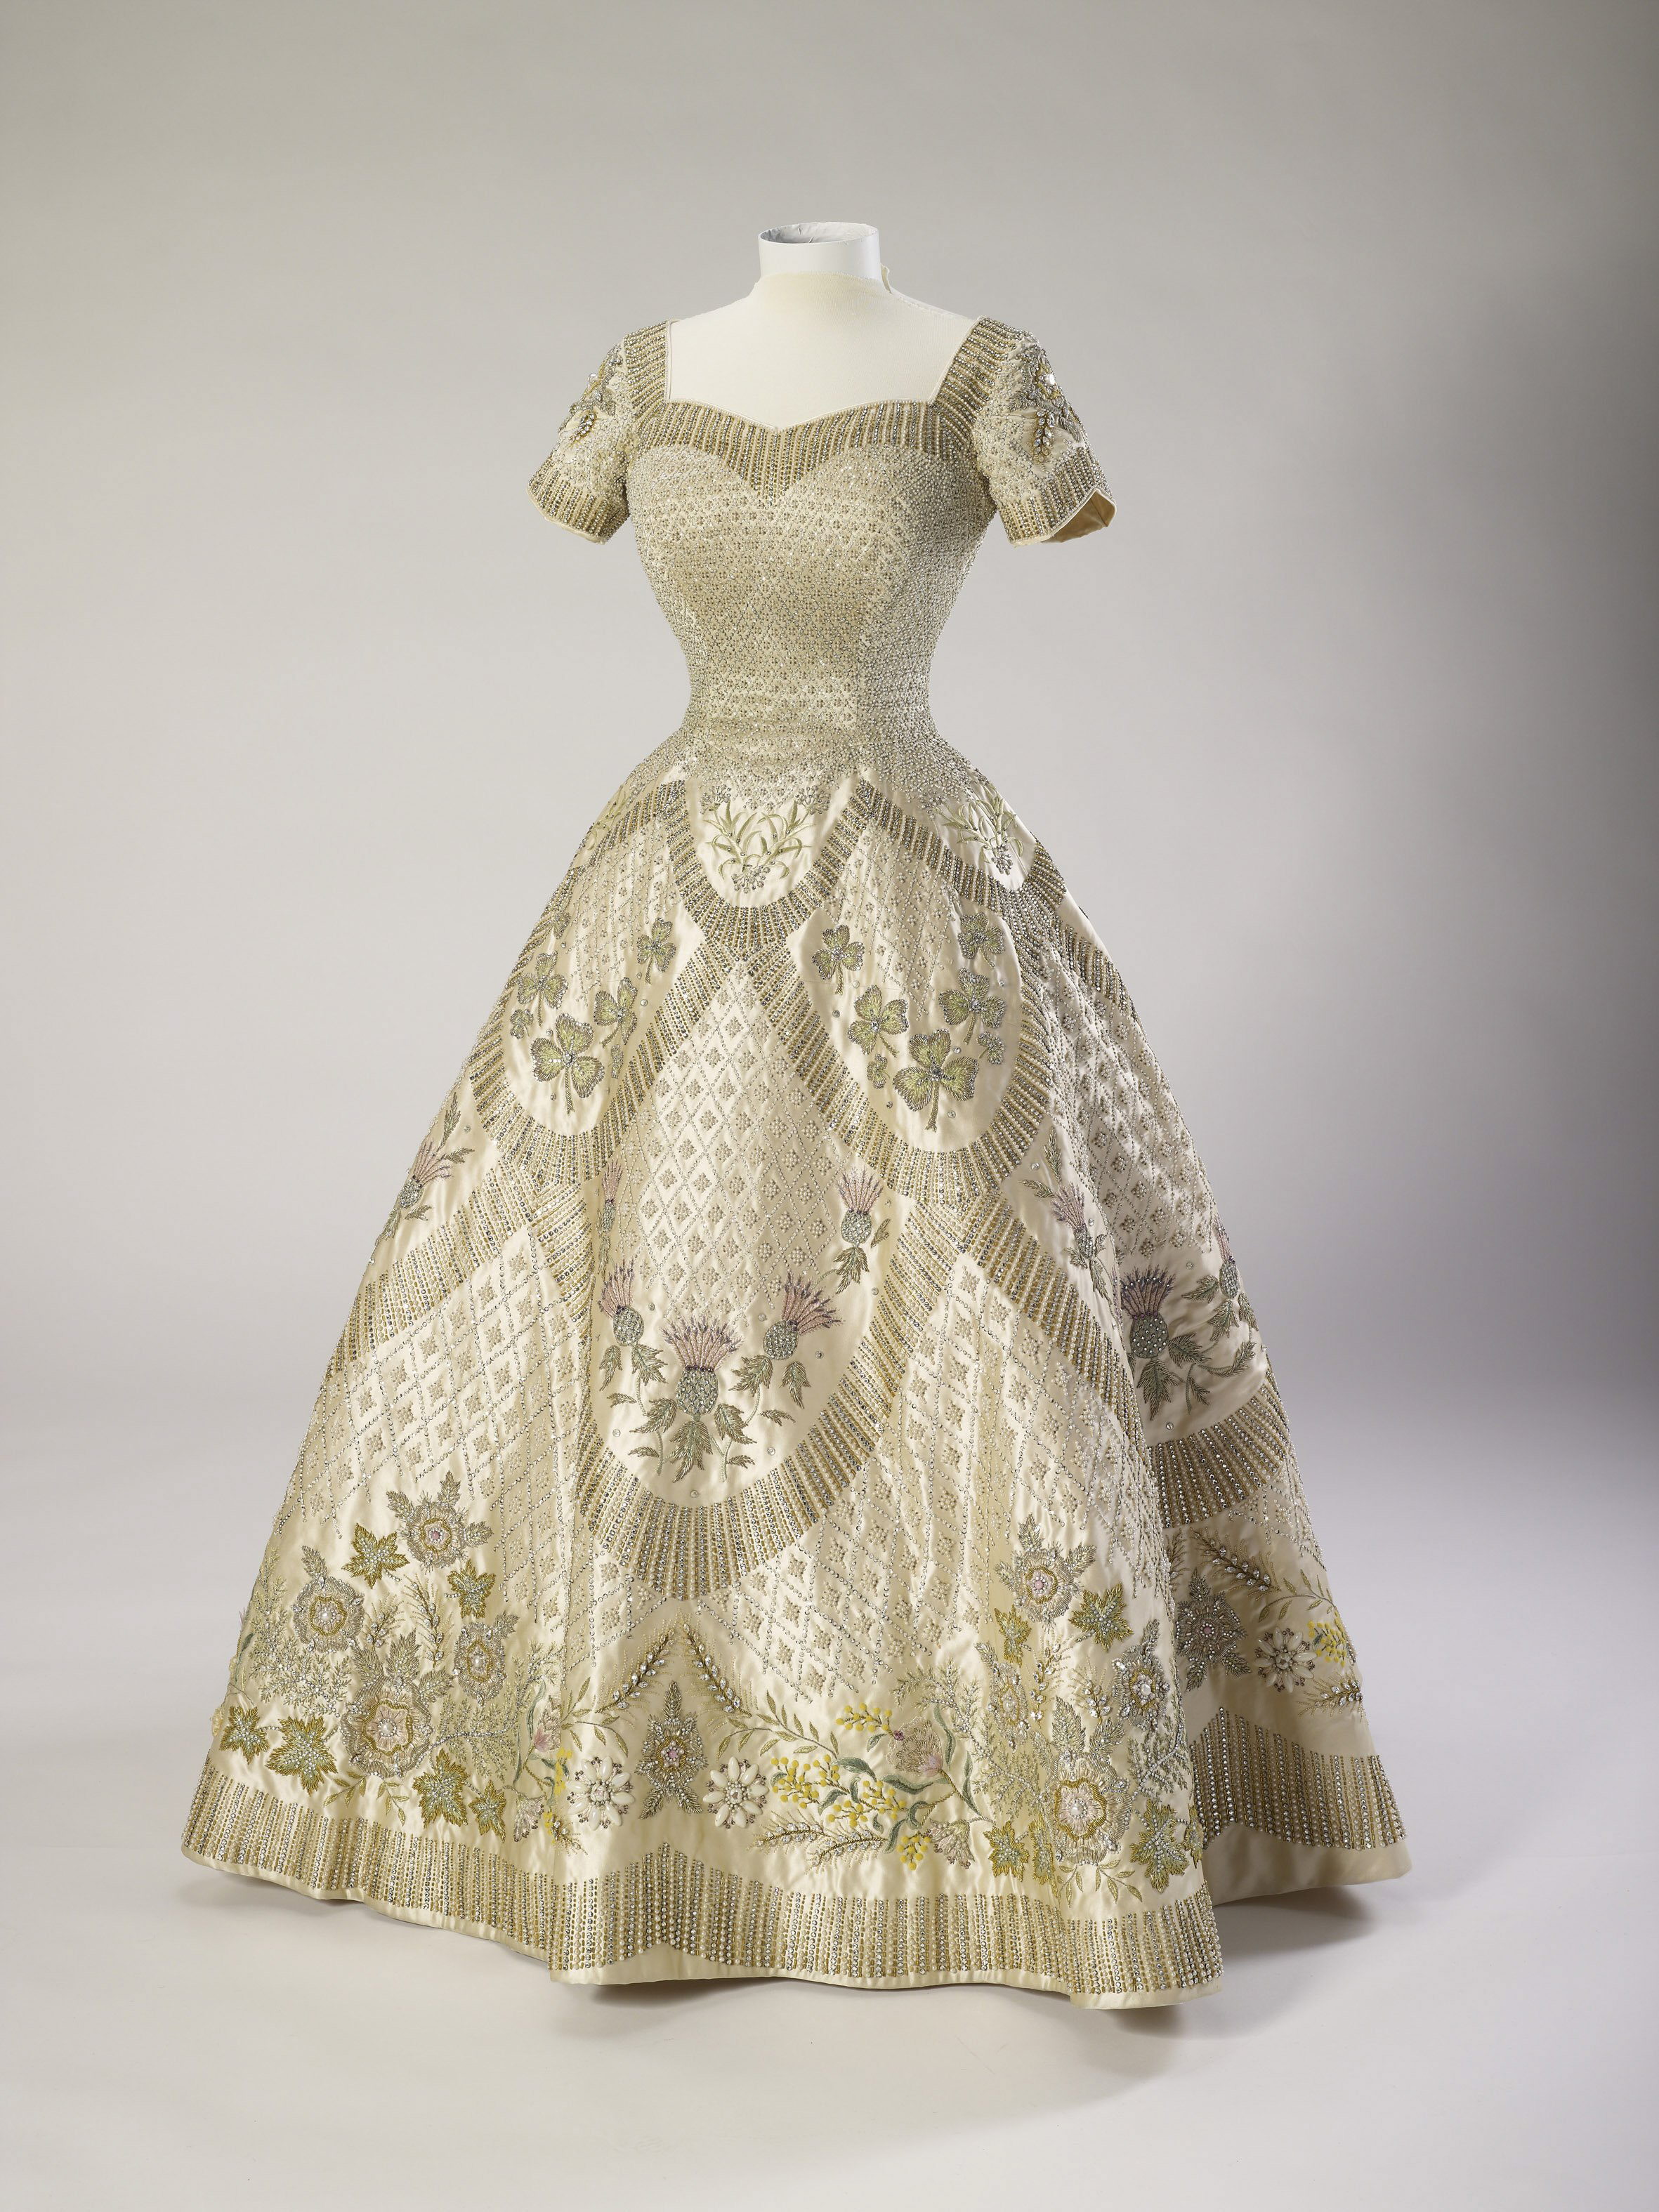 El Palacio de Buckingham exhibe vestidos y artículos de la Coronación de 1953